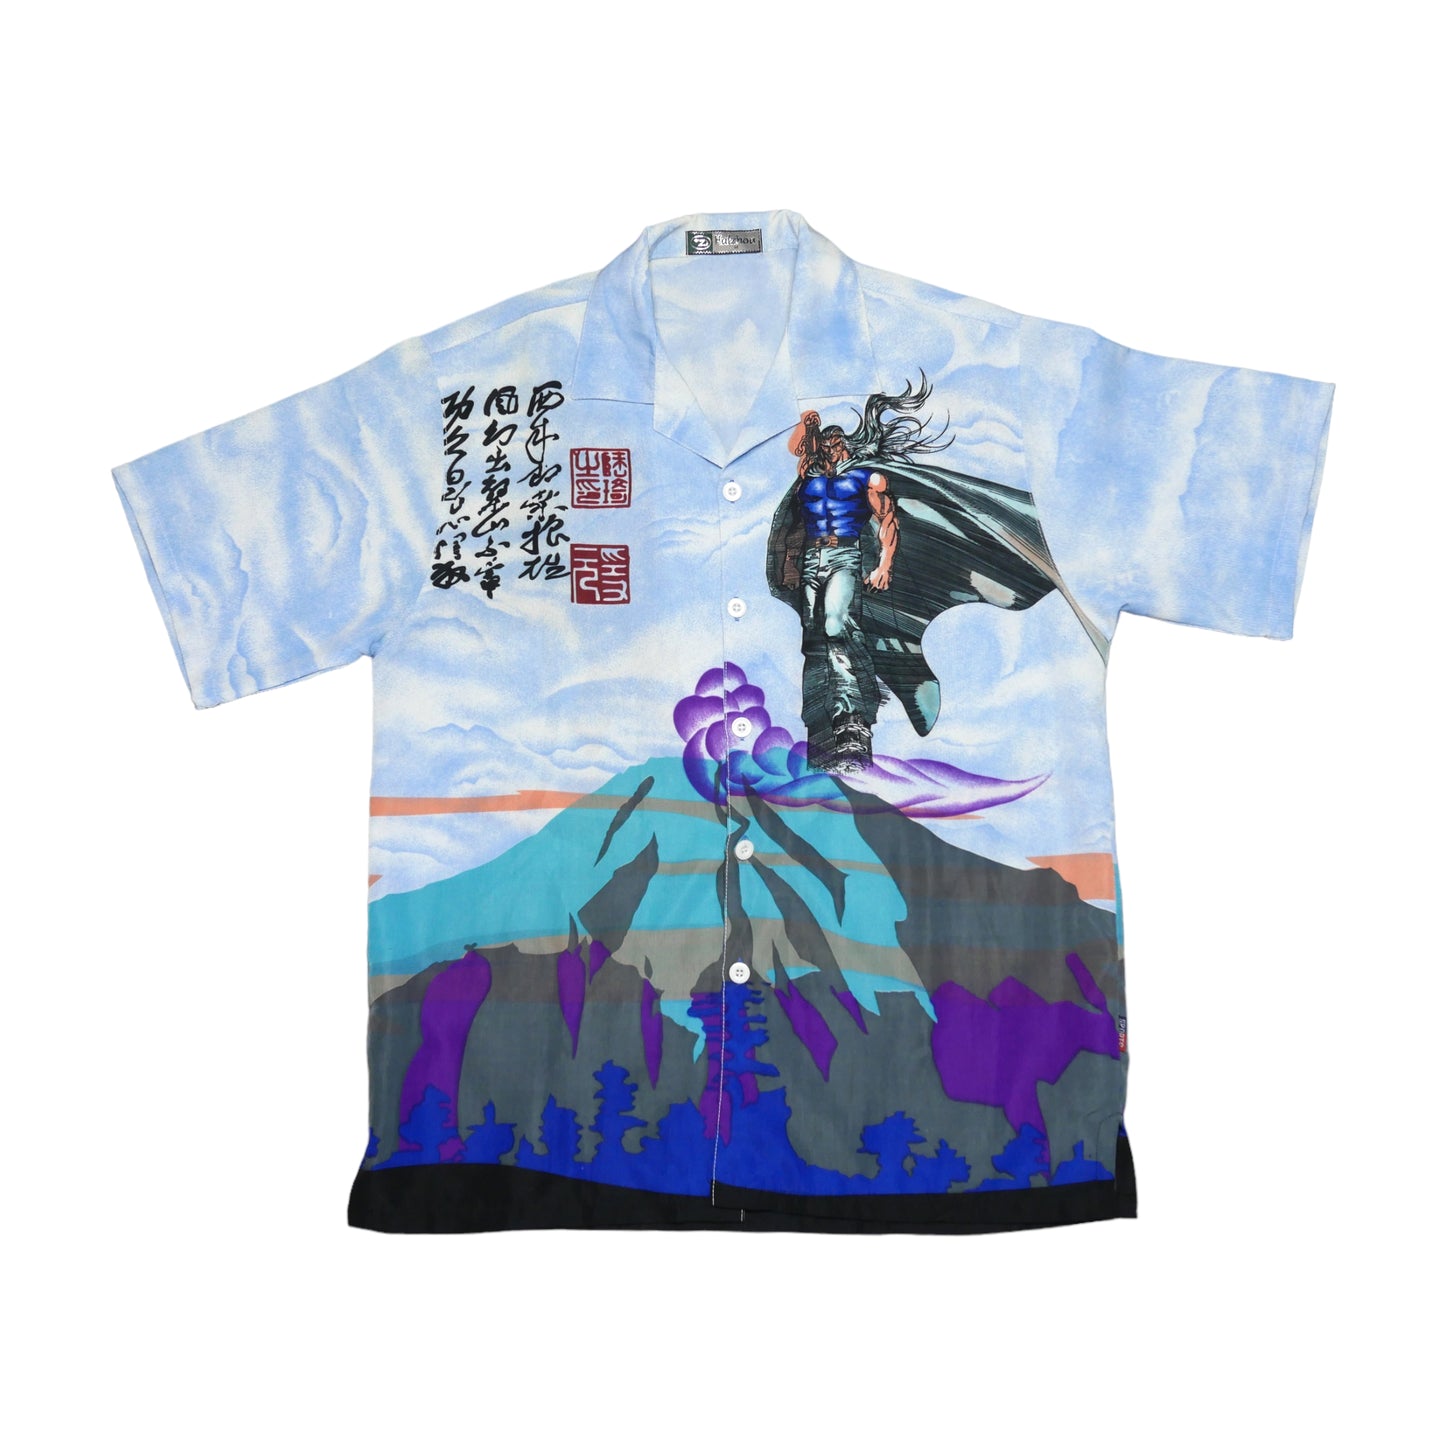 Halzhou Anime Shirt - Medium